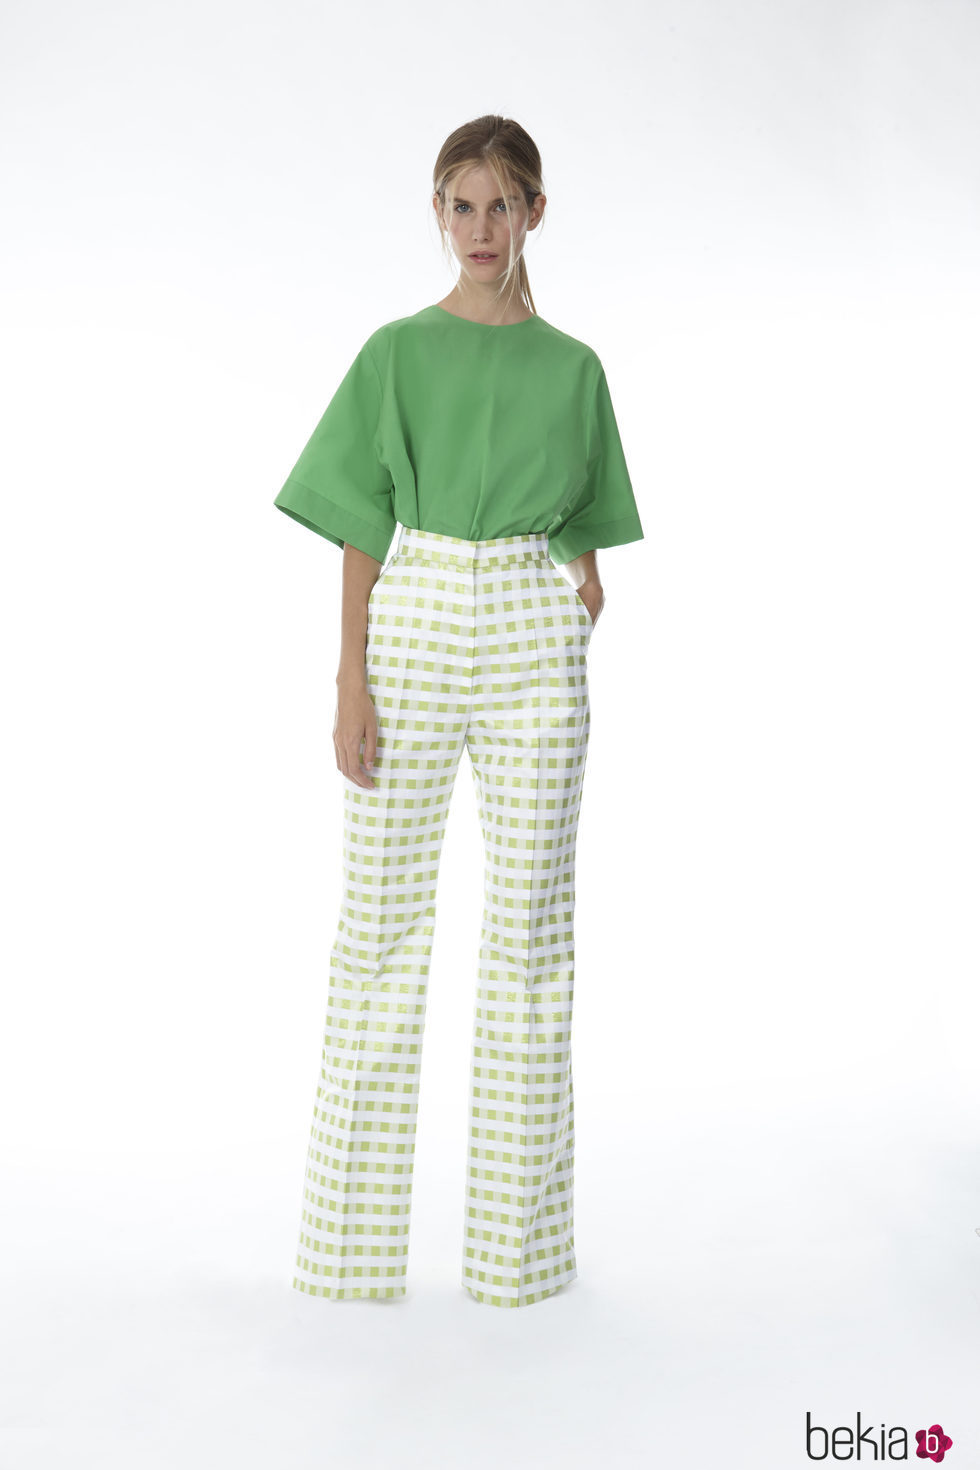 Pantalón de cuadros vichy y blusa verde de la colección 'Resort 18' de '2ND LAB by The 2nd Skin Co'